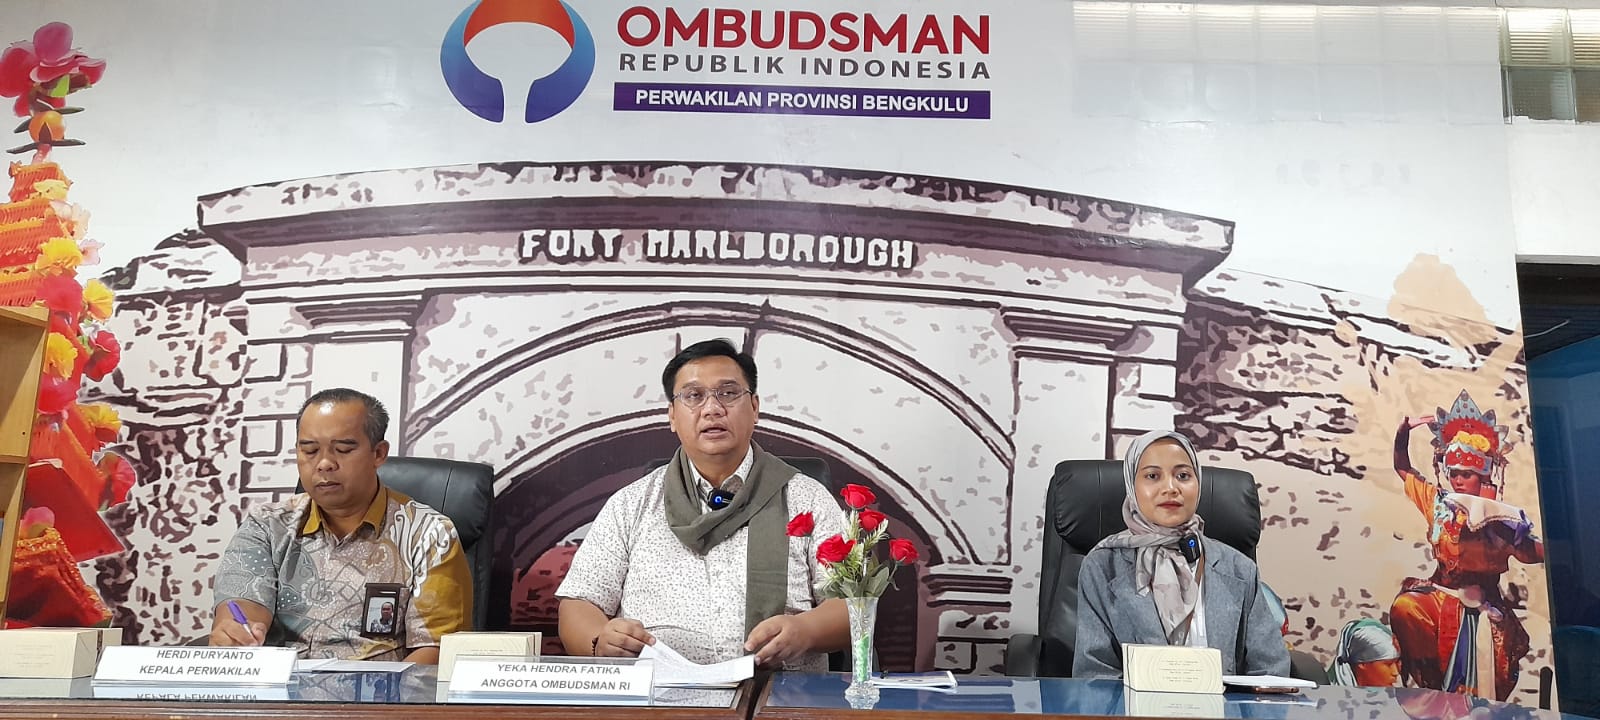 Ombudsman RI Bengkulu Awasi Proses Pengadaan PPPK